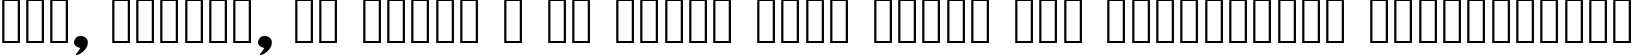 Пример написания шрифтом xotax текста на украинском